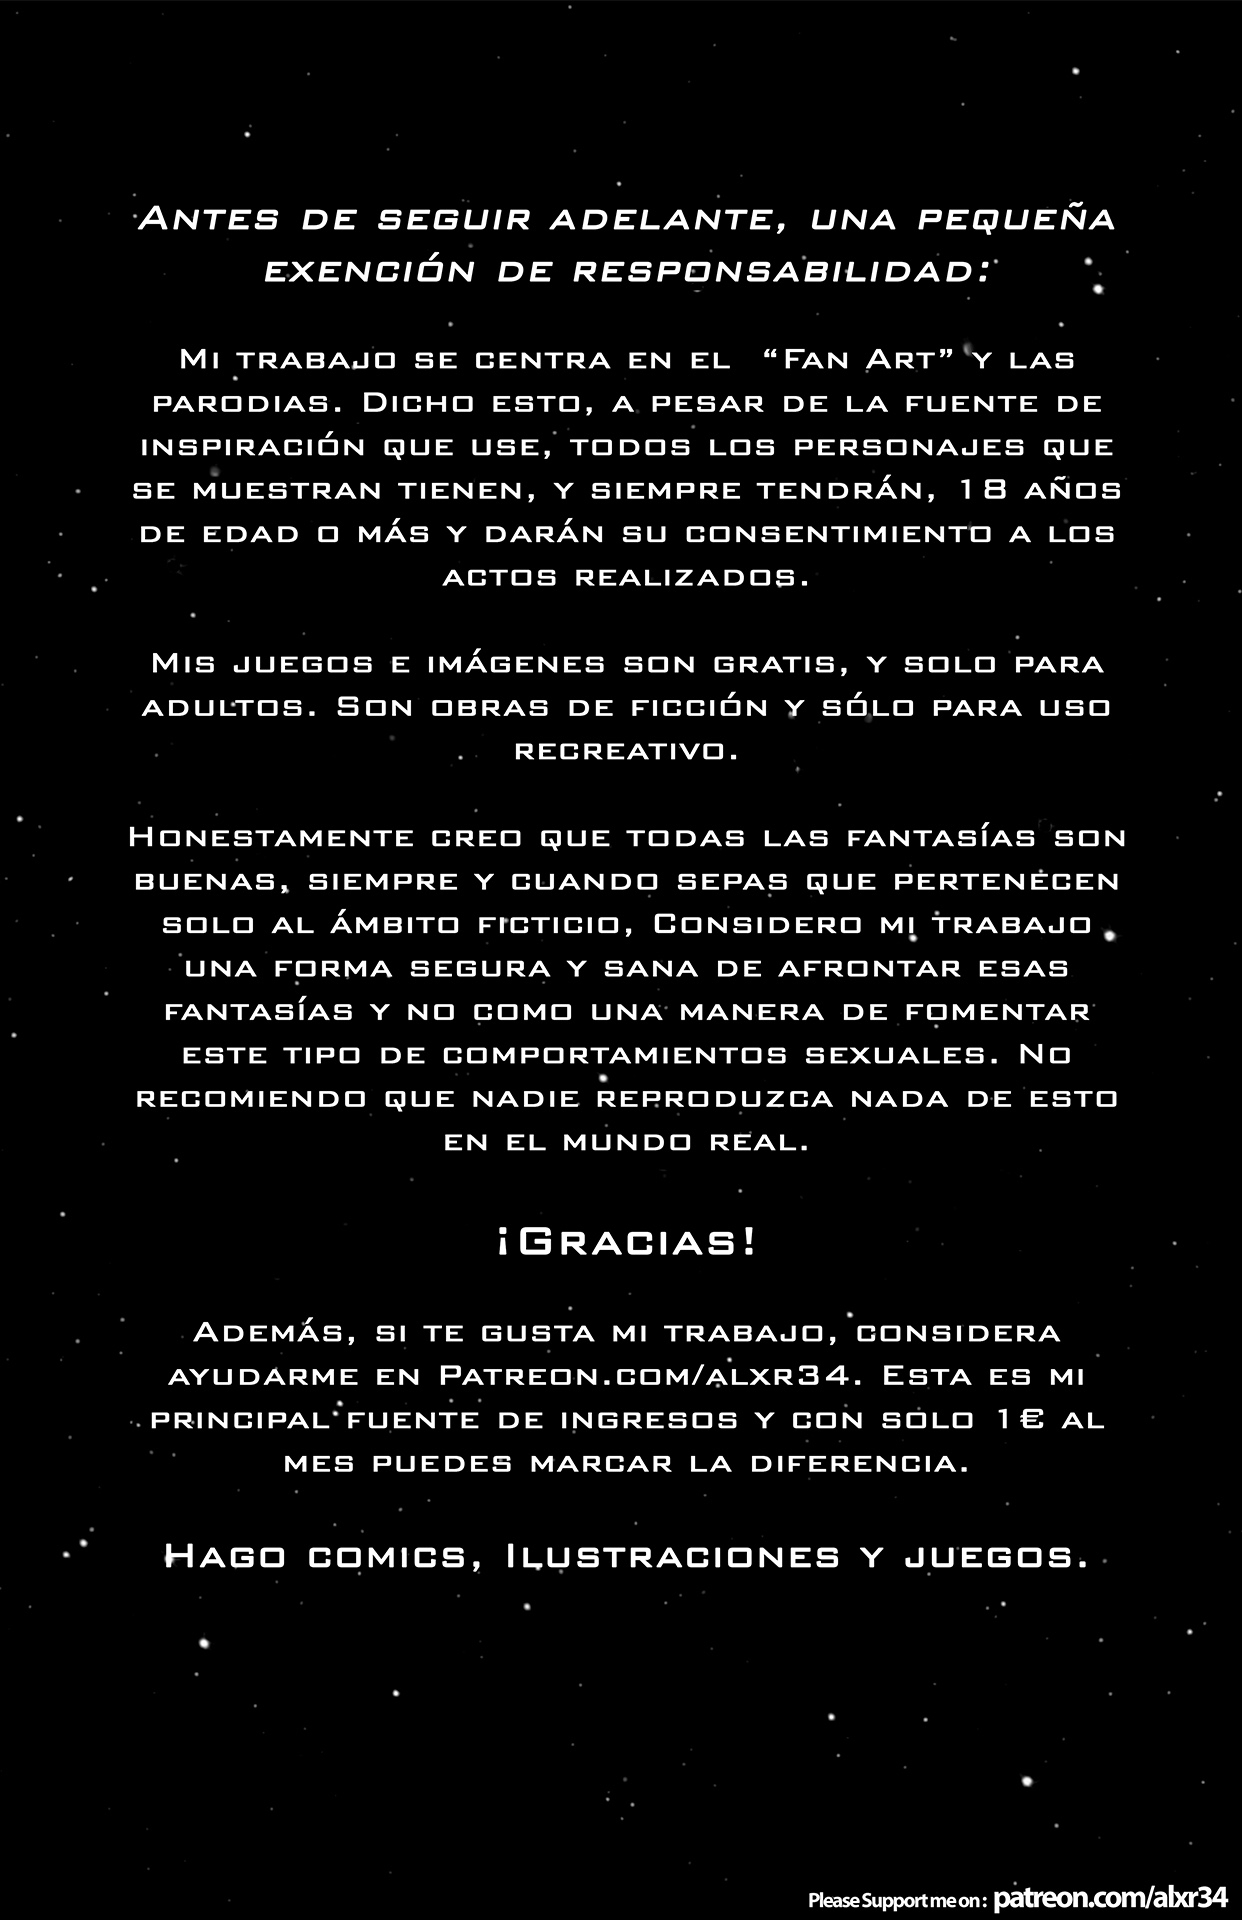 (Alx) [Star Wars] ”Guía completa de sexo con ̶W̶o̶̶̶o̶̶̶k̶̶̶i̶̶̶e̶̶̶e̶̶̶´̶̶̶s̶̶̶ ¡EWOKS! V" “Amor en la Jungla” HD [1242X1920] (Spanish/Castellano) Versión final + Versión sin texto 1